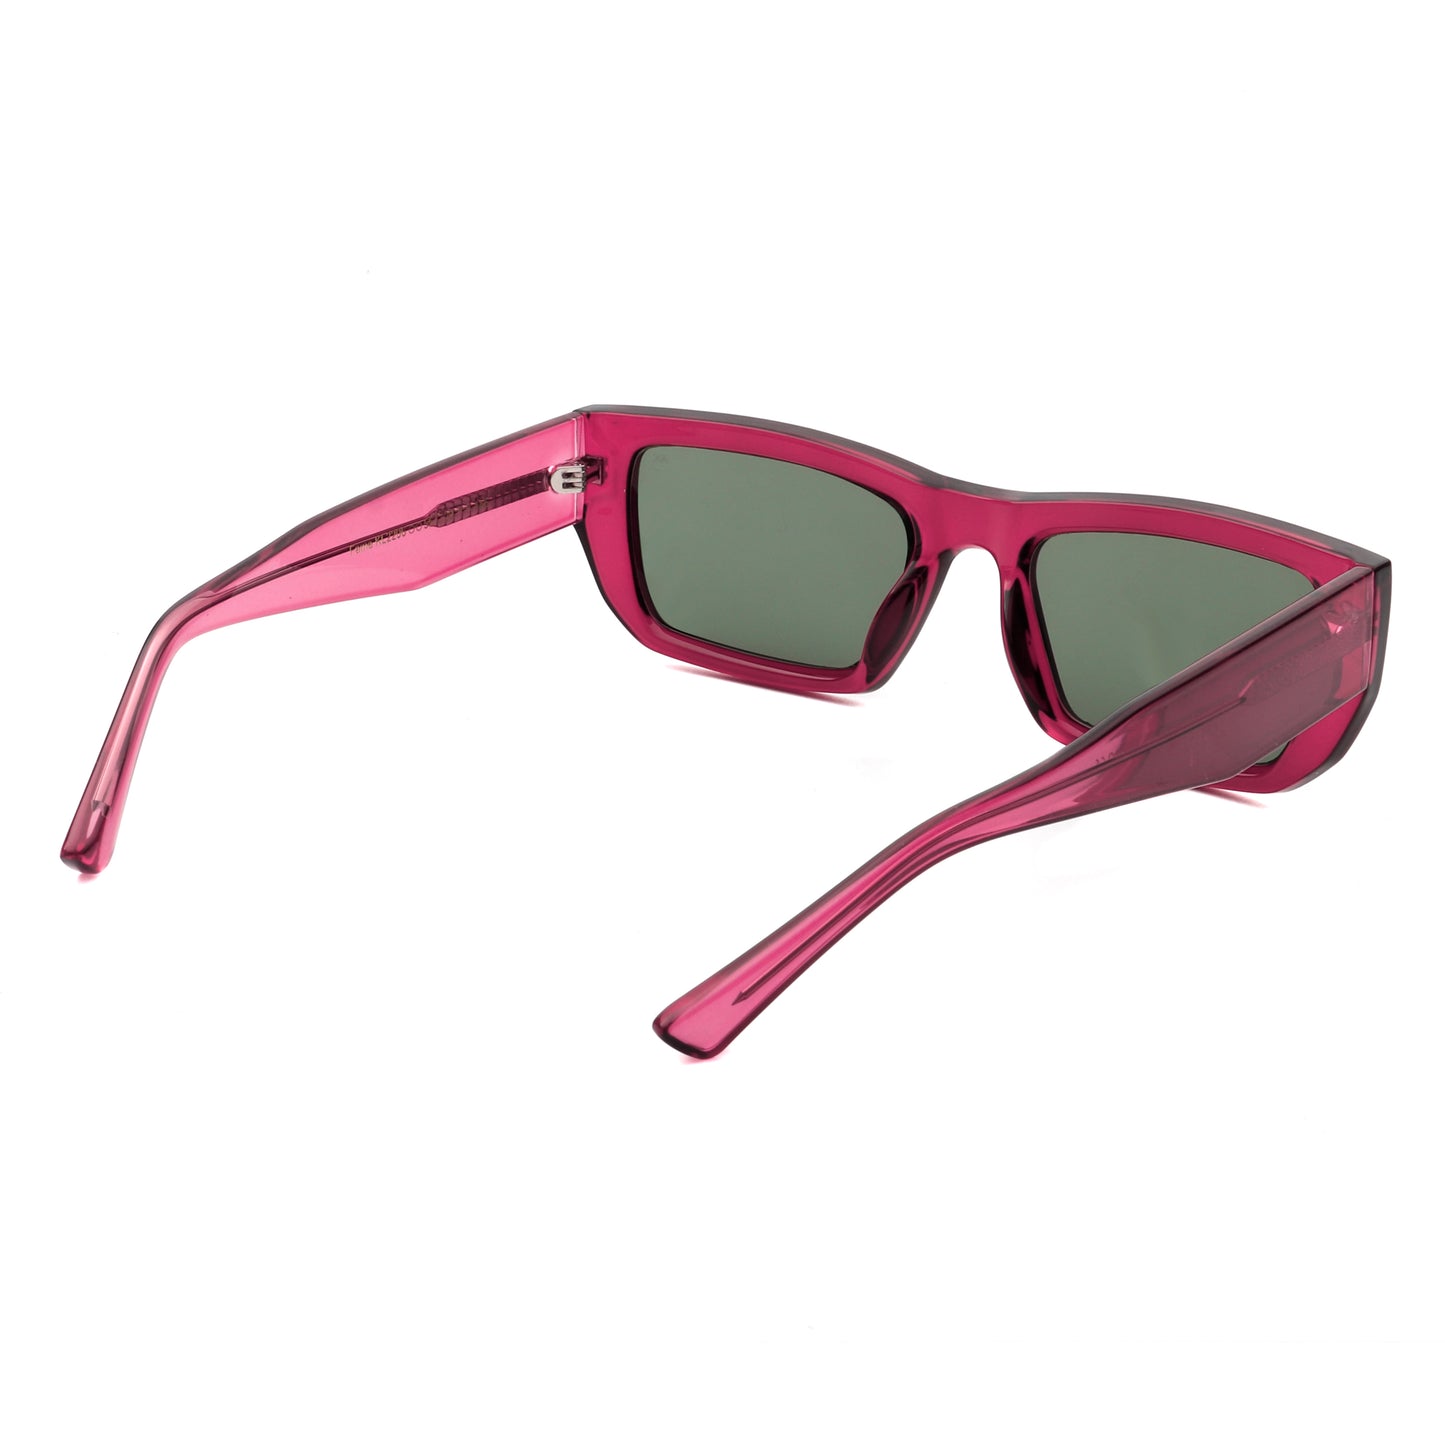 A.Kjaerbede Fame Sunglasses in Burgundy Transparent color